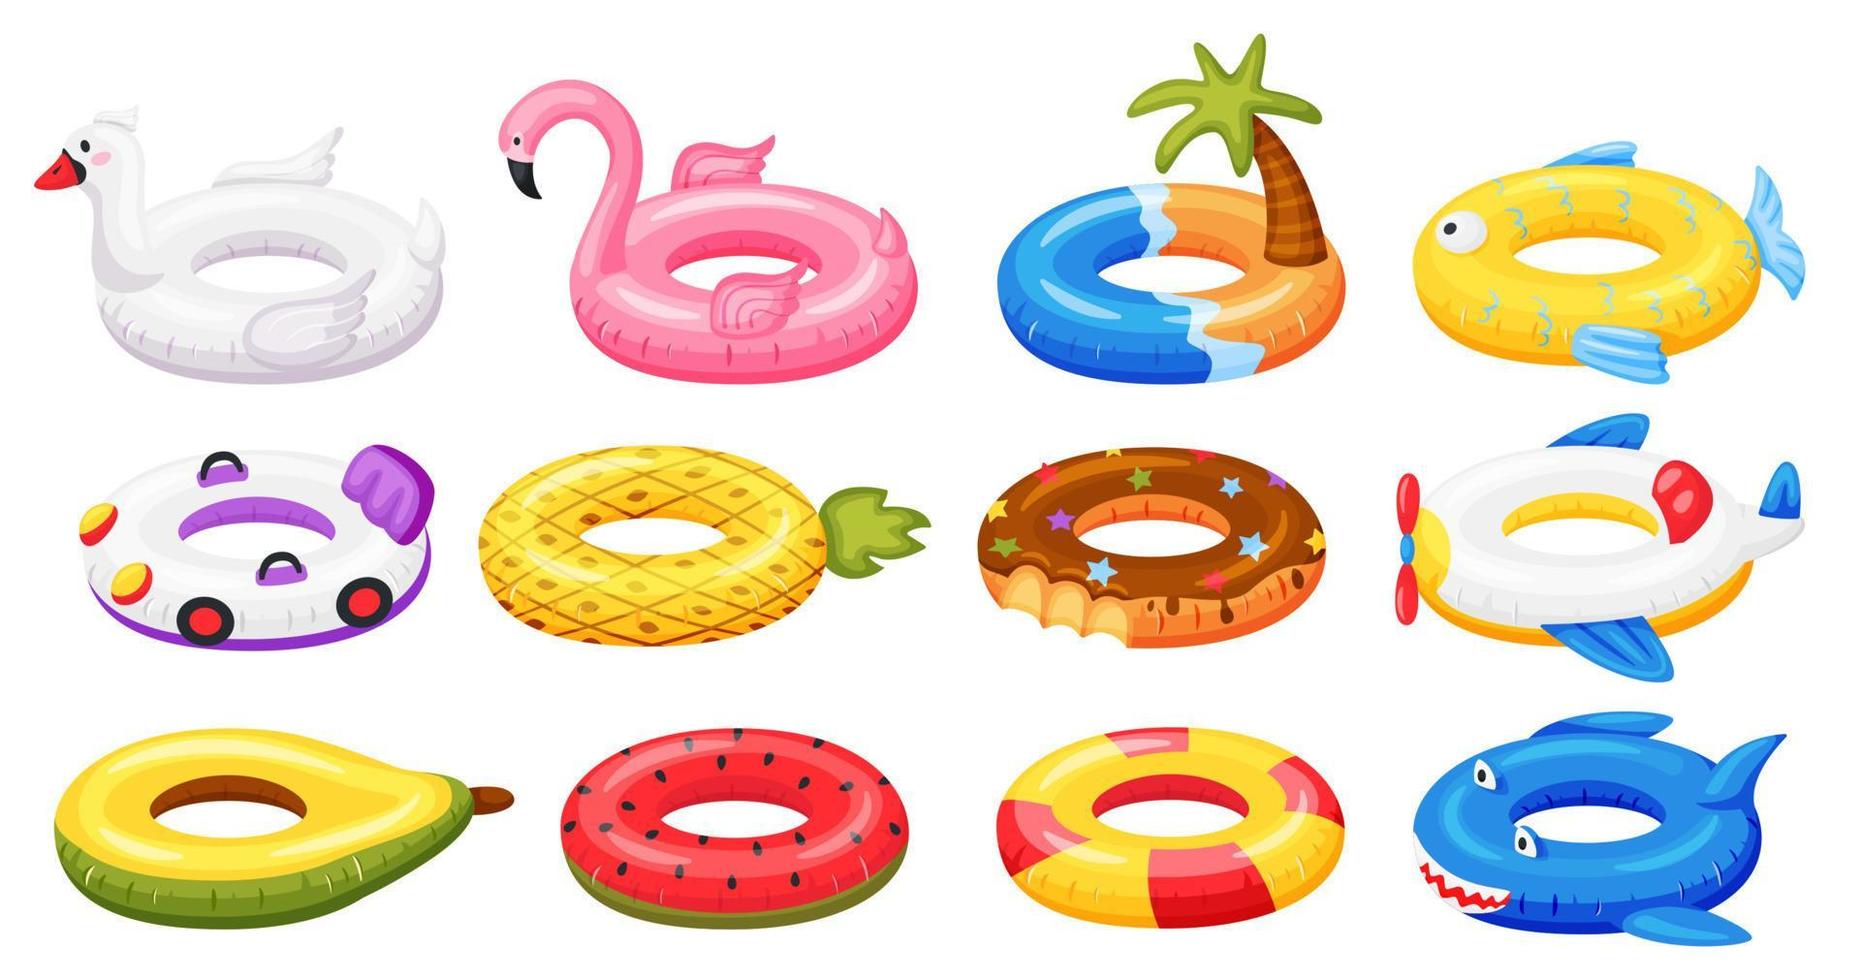 nadando anillo. inflable piscina accesorios, flotante caucho juguetes sandía, piña, rosquilla, flamenco. dibujos animados verano nadar anillo vector conjunto